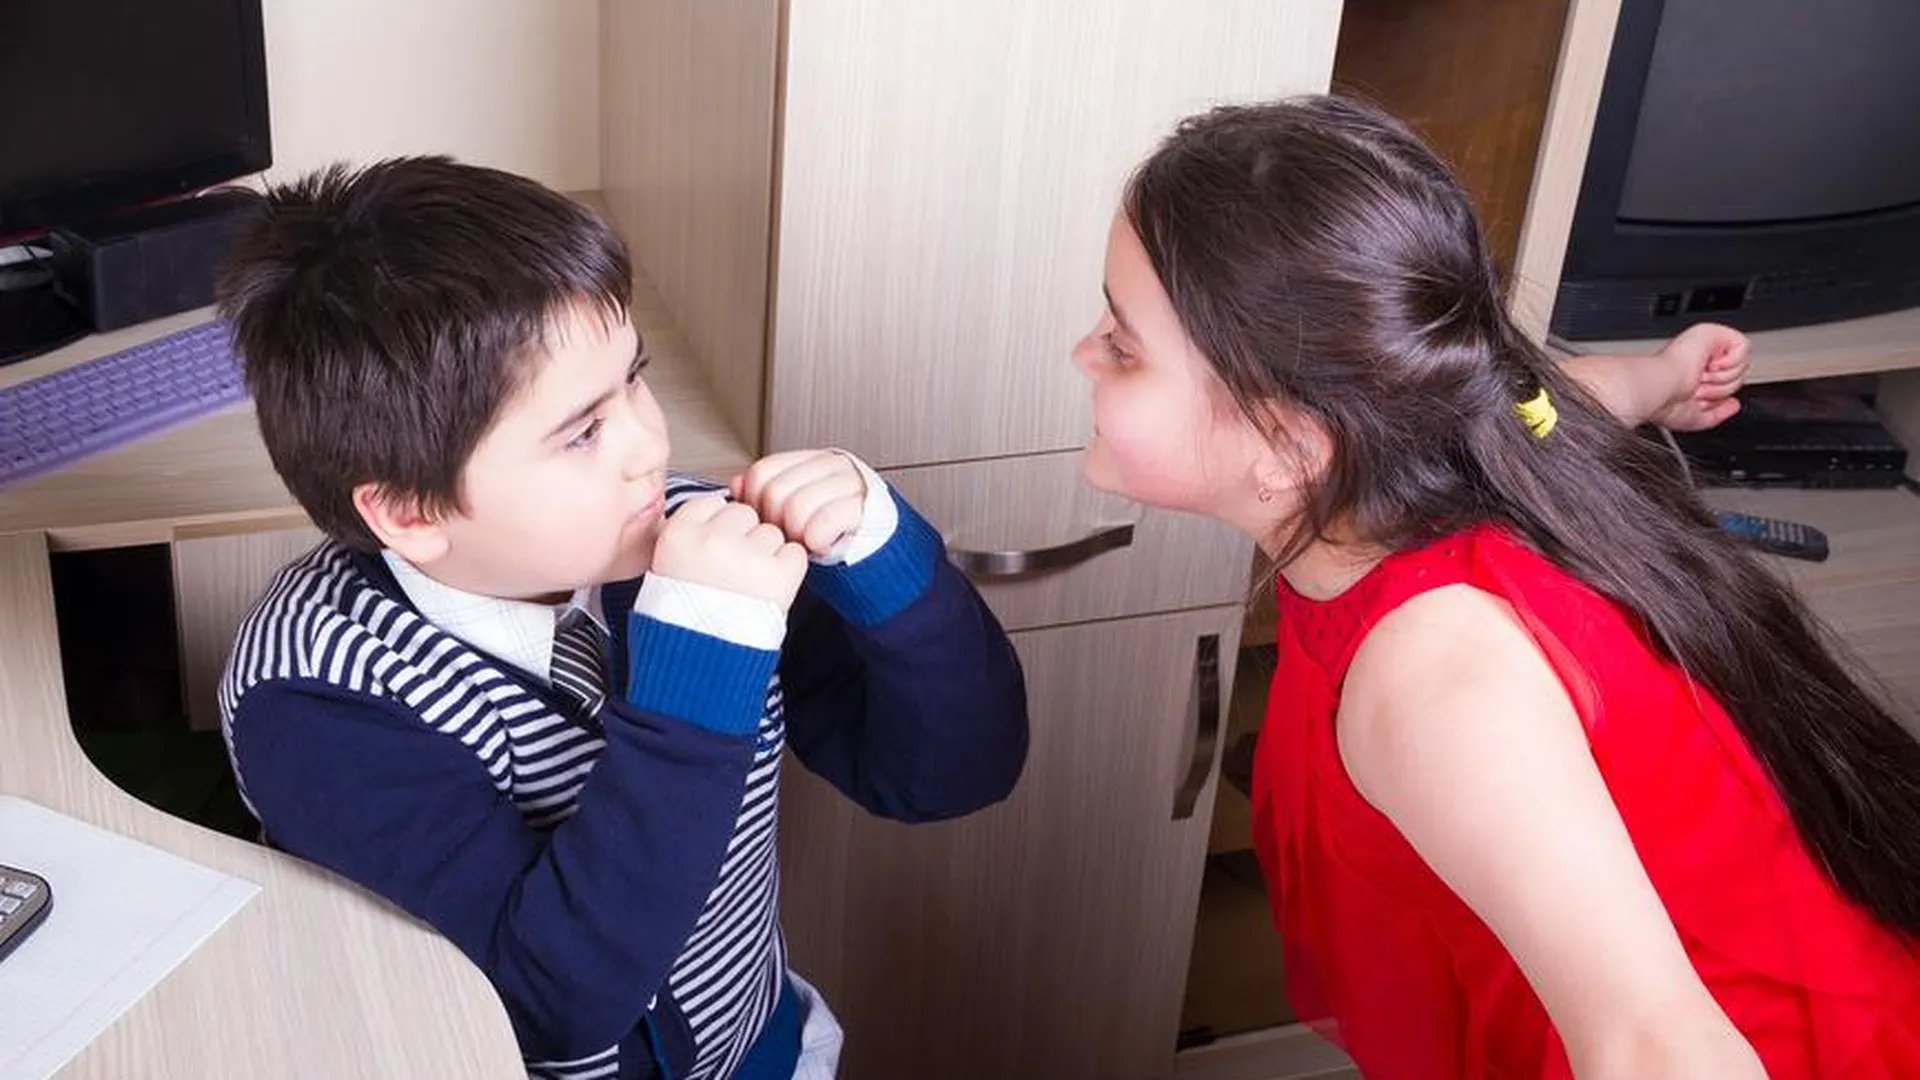 Психолог Васильева: если дети в семье дерутся, то нужно ввести стоп-слово